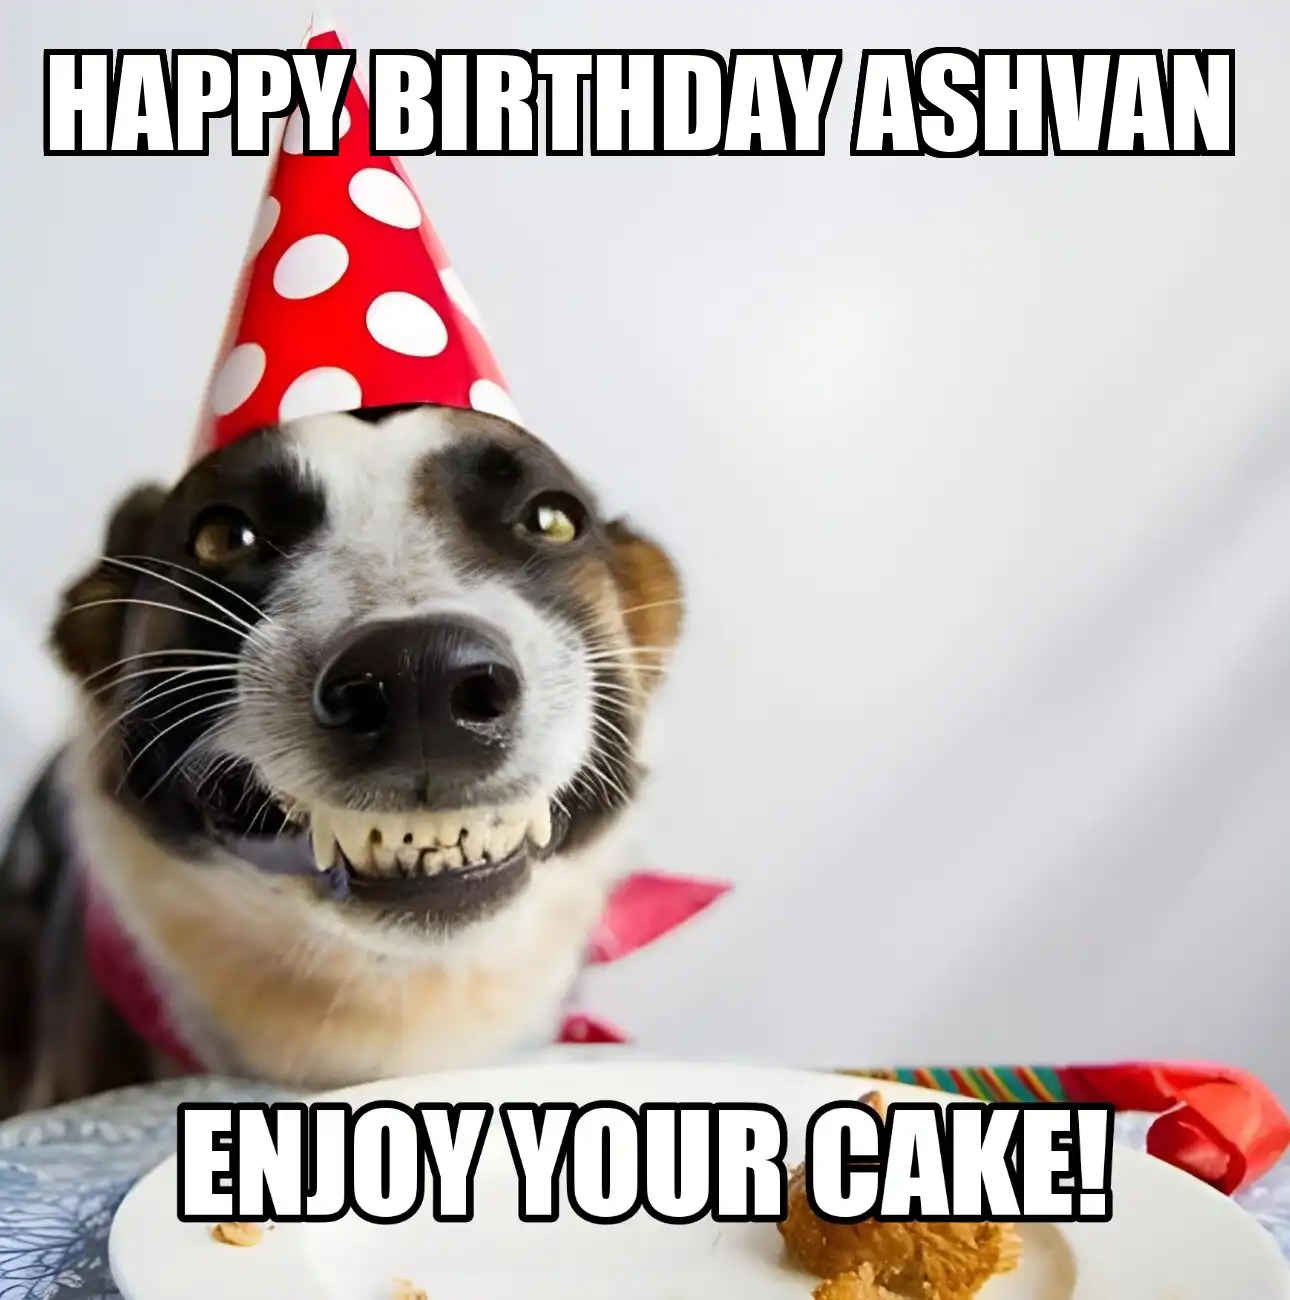 Happy Birthday Ashvan Enjoy Your Cake Dog Meme